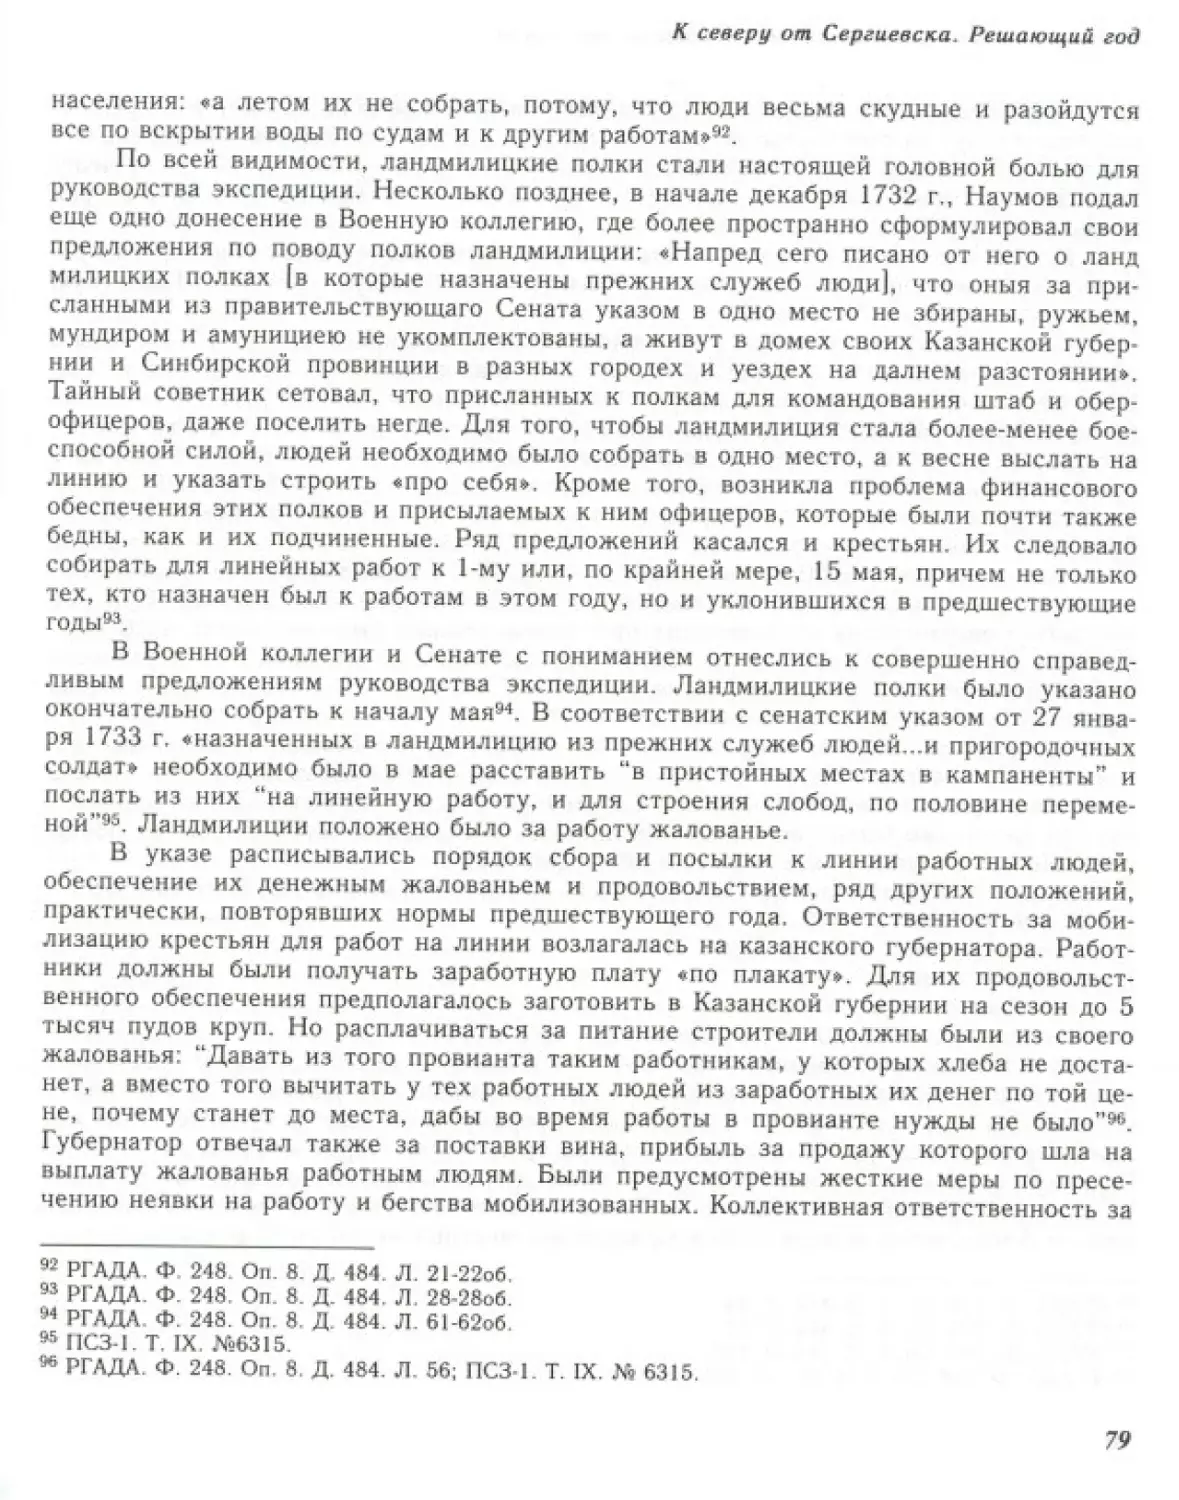 Вал0081.pdf (p.80)